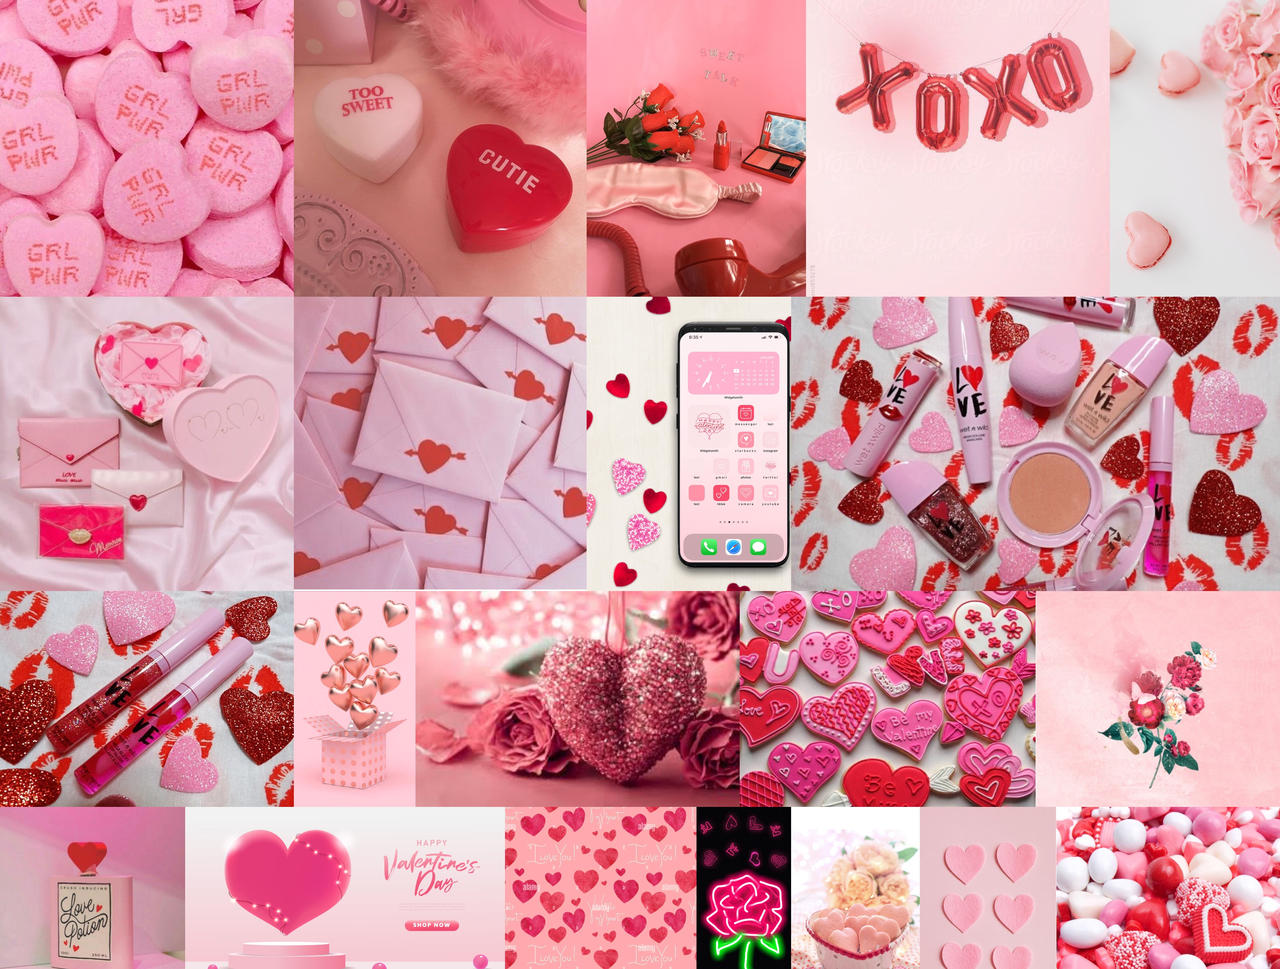 Valentine: Mùa lễ tình nhân lại đến! Để đón chào ngày này, hãy cùng xem qua những hình ảnh đầy ngọt ngào và tình cảm này. Cùng lựa chọn những món quà, hình ảnh, trang phục để tặng cho người yêu của bạn trong ngày Valentine này.